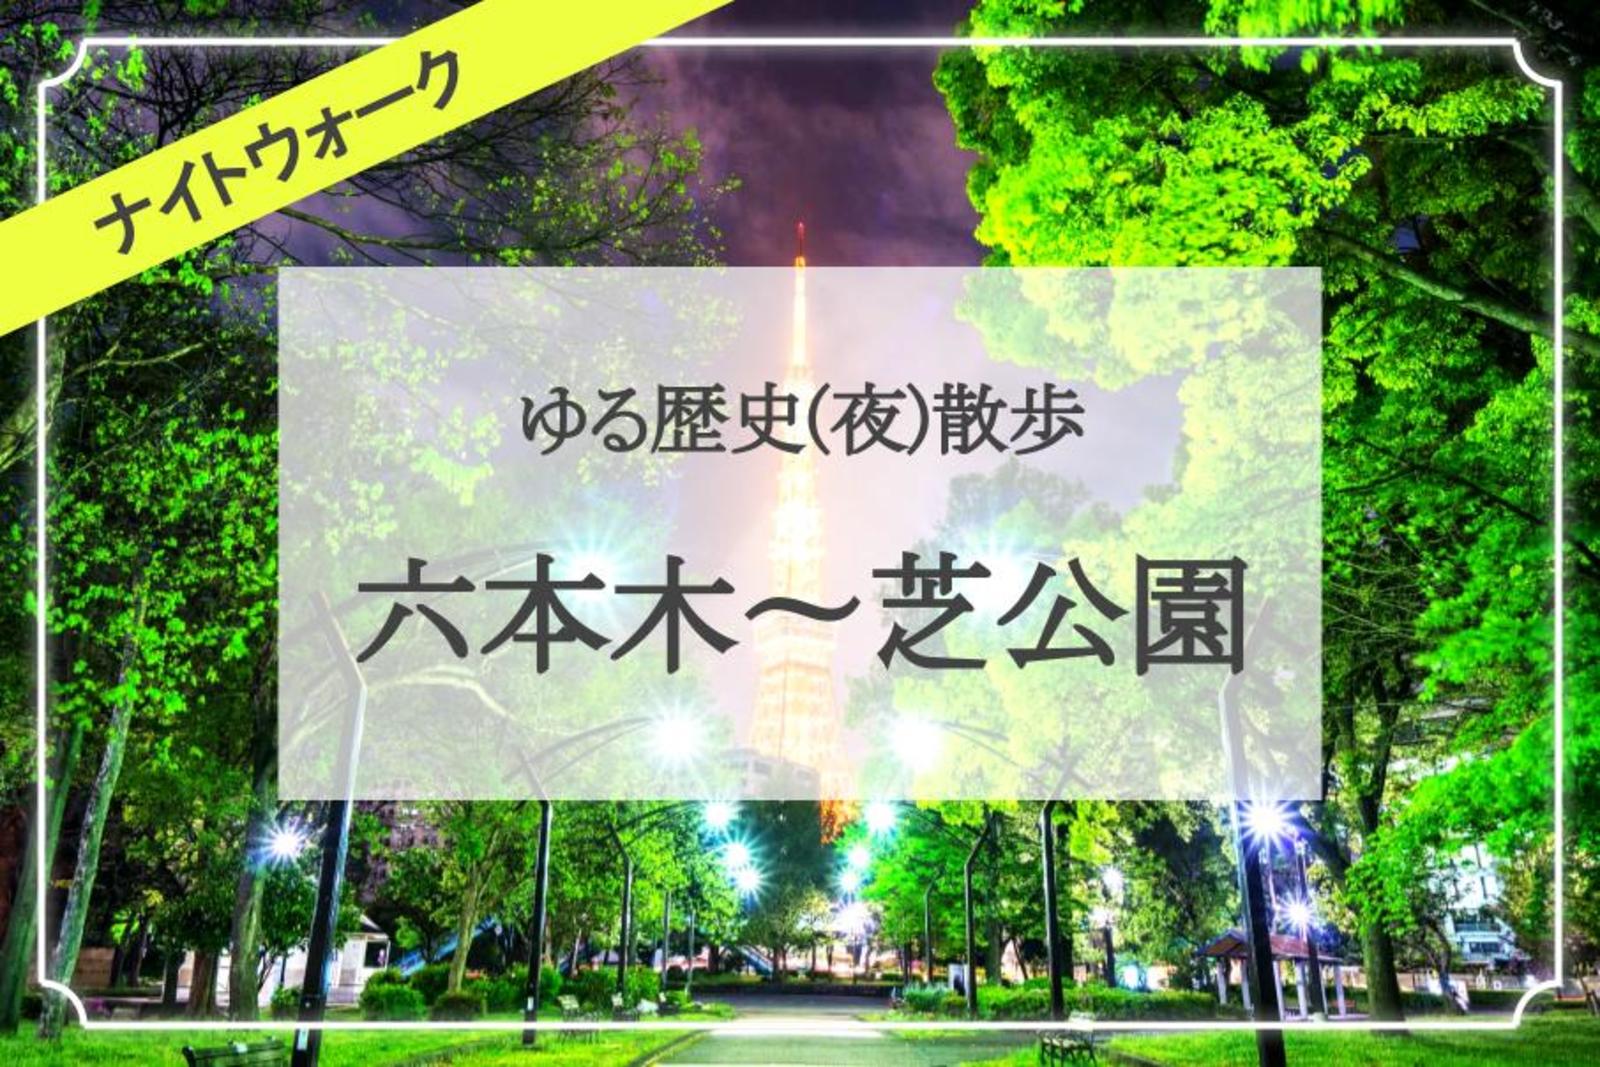 東京ミッドタウン〜六本木〜東京タワー〜芝公園を歩きます🌃